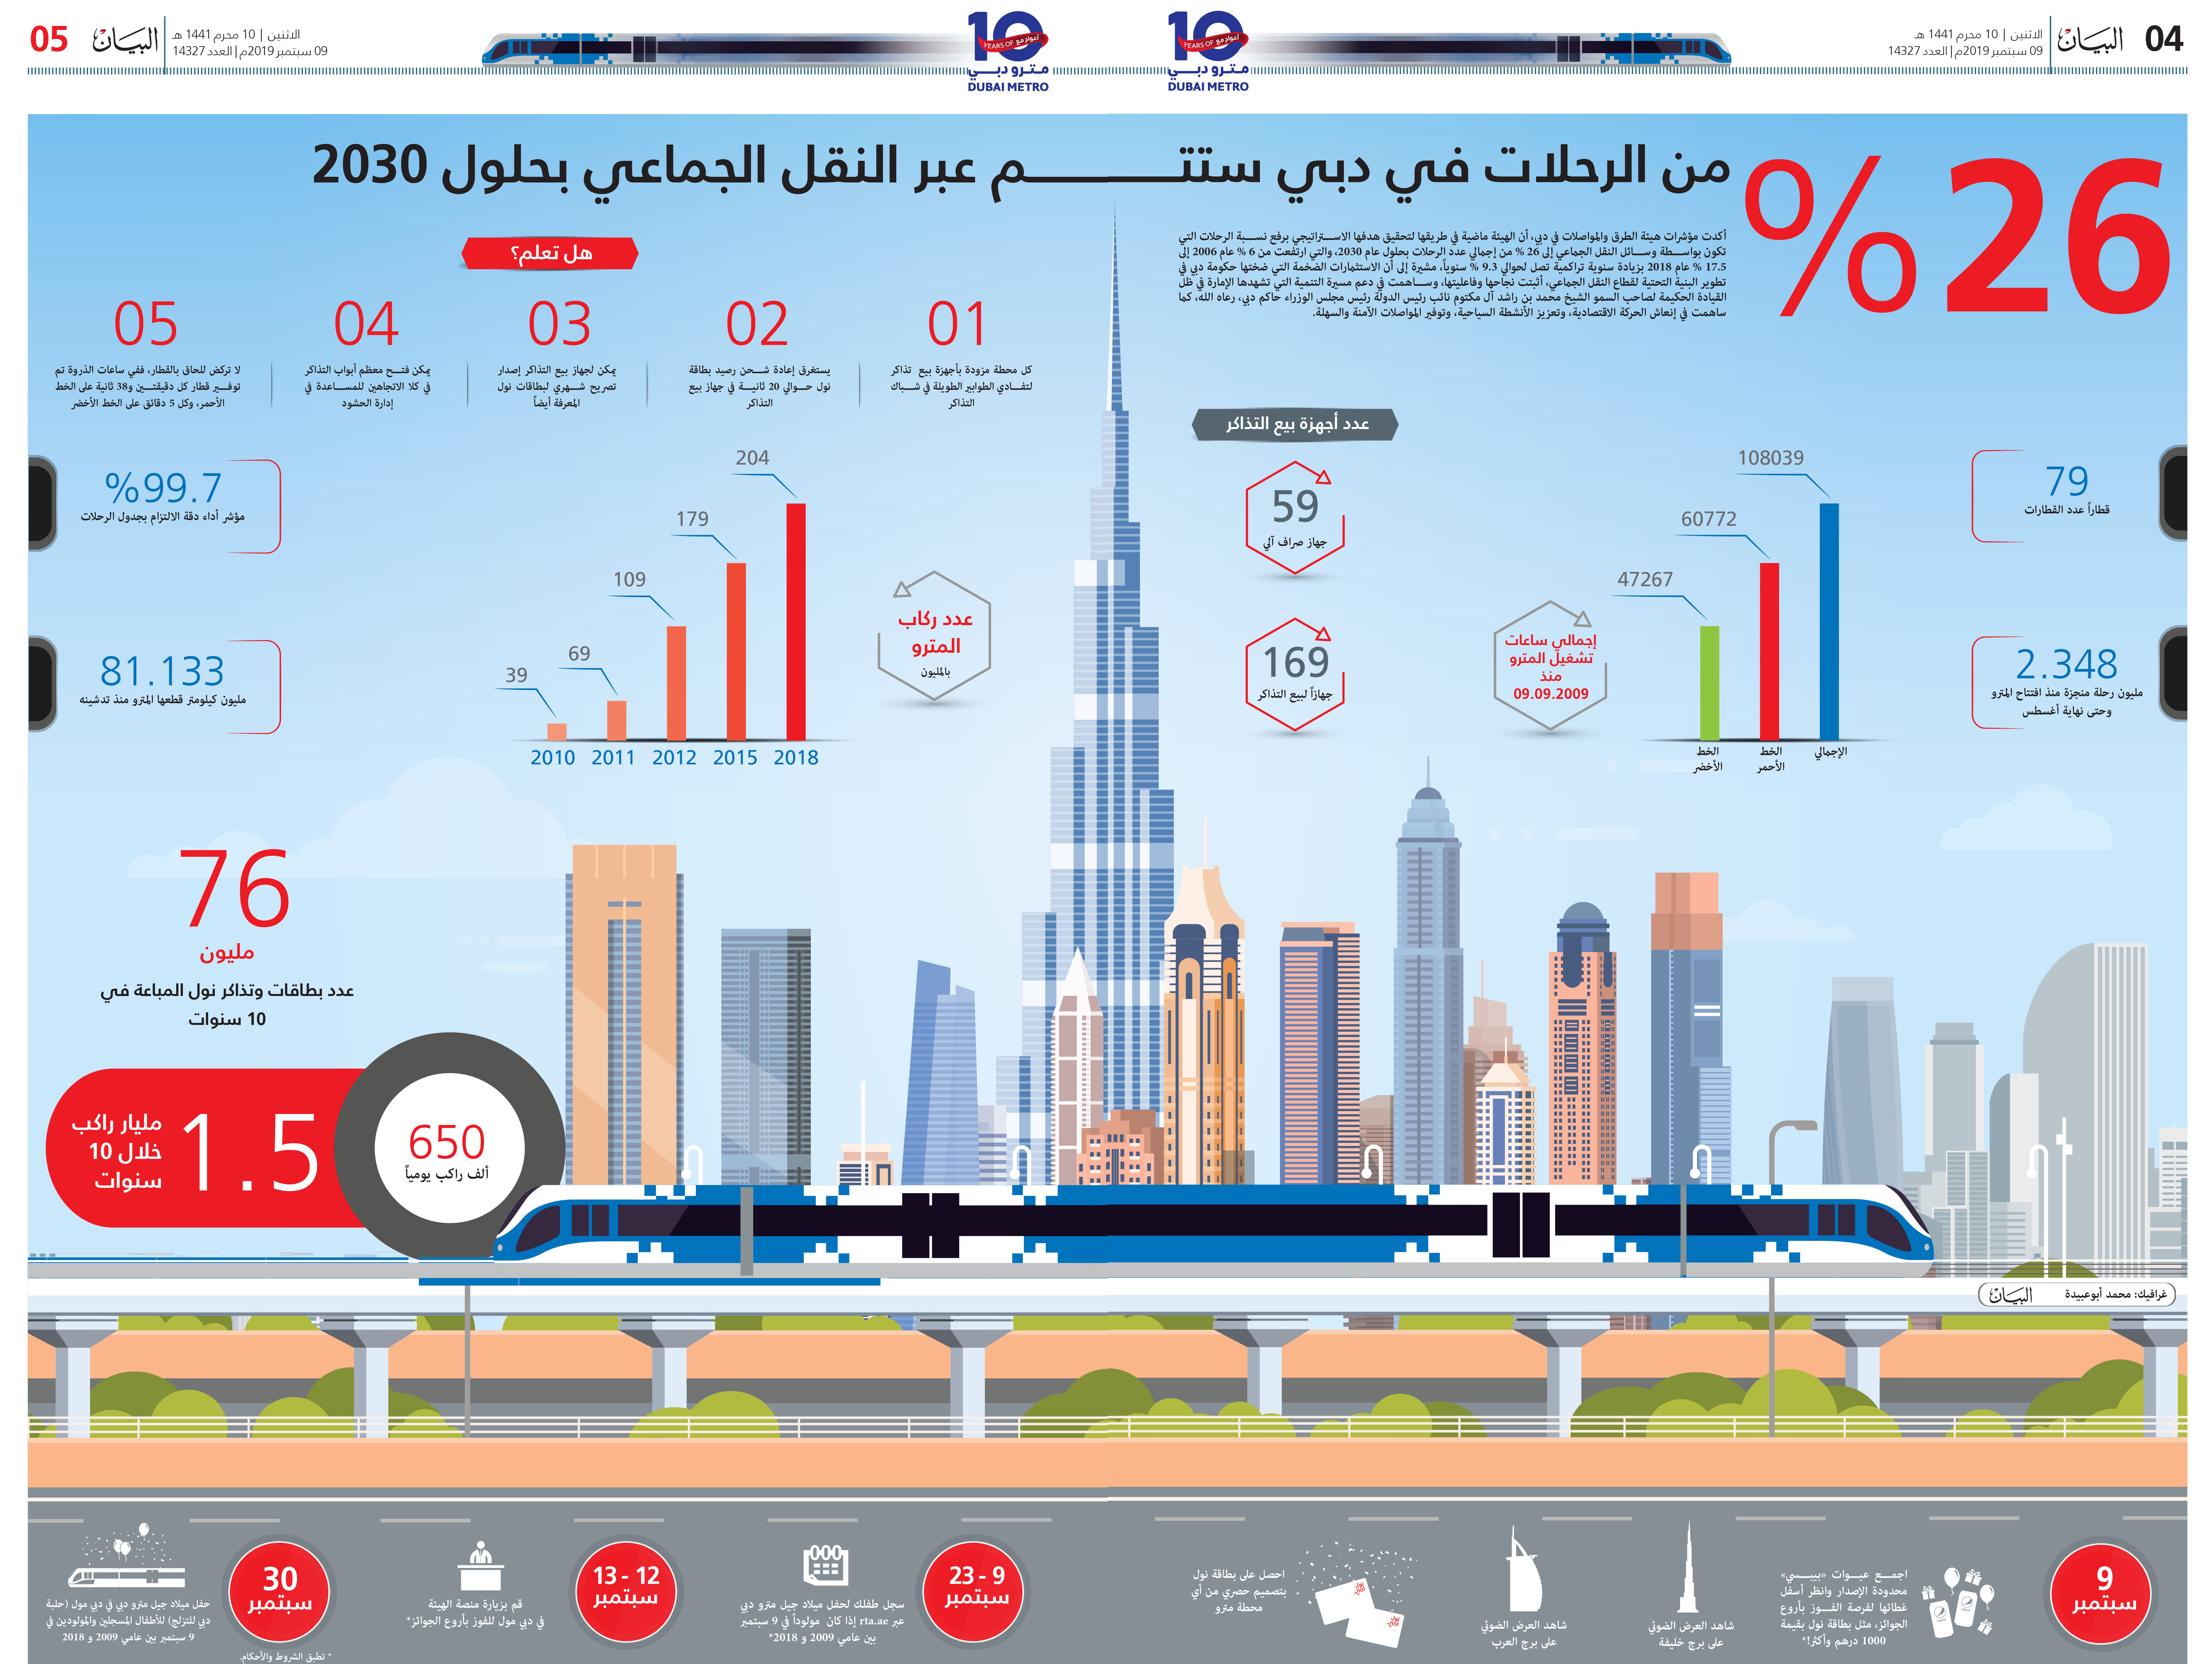 26 من الرحلات في دبي ستتم عبر النقل الجماعي بحلول 2030 عبر الإمارات أخبار وتقارير البيان